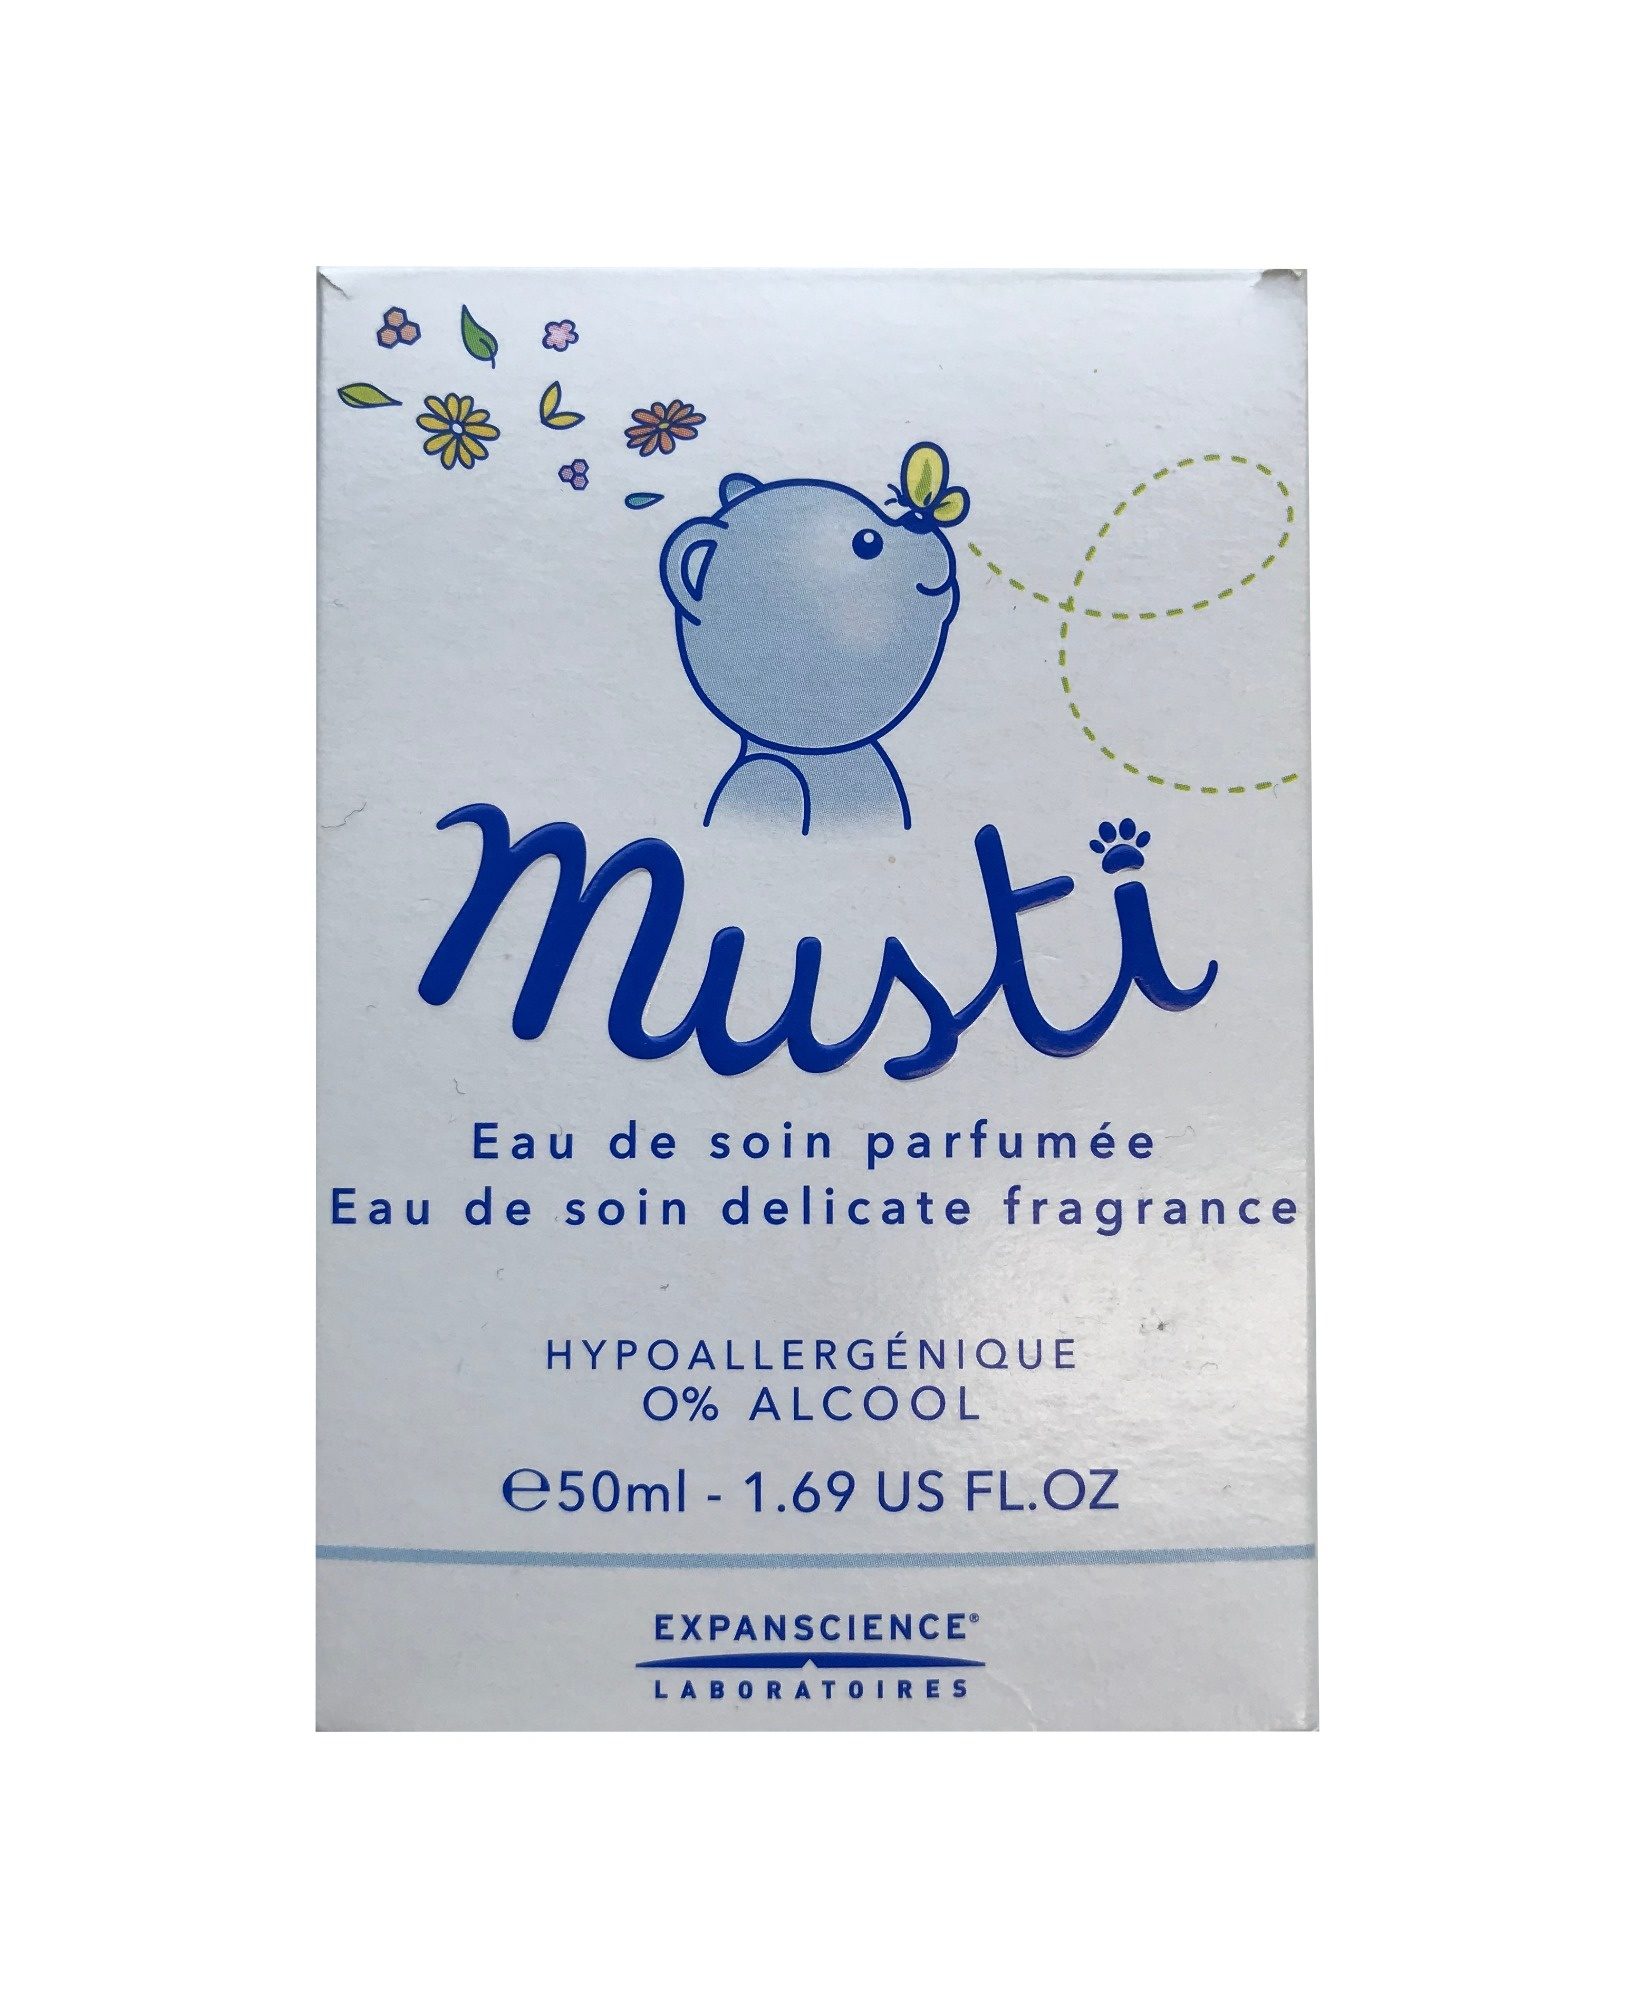 Musti Eau de soin parfumée - Product - fr